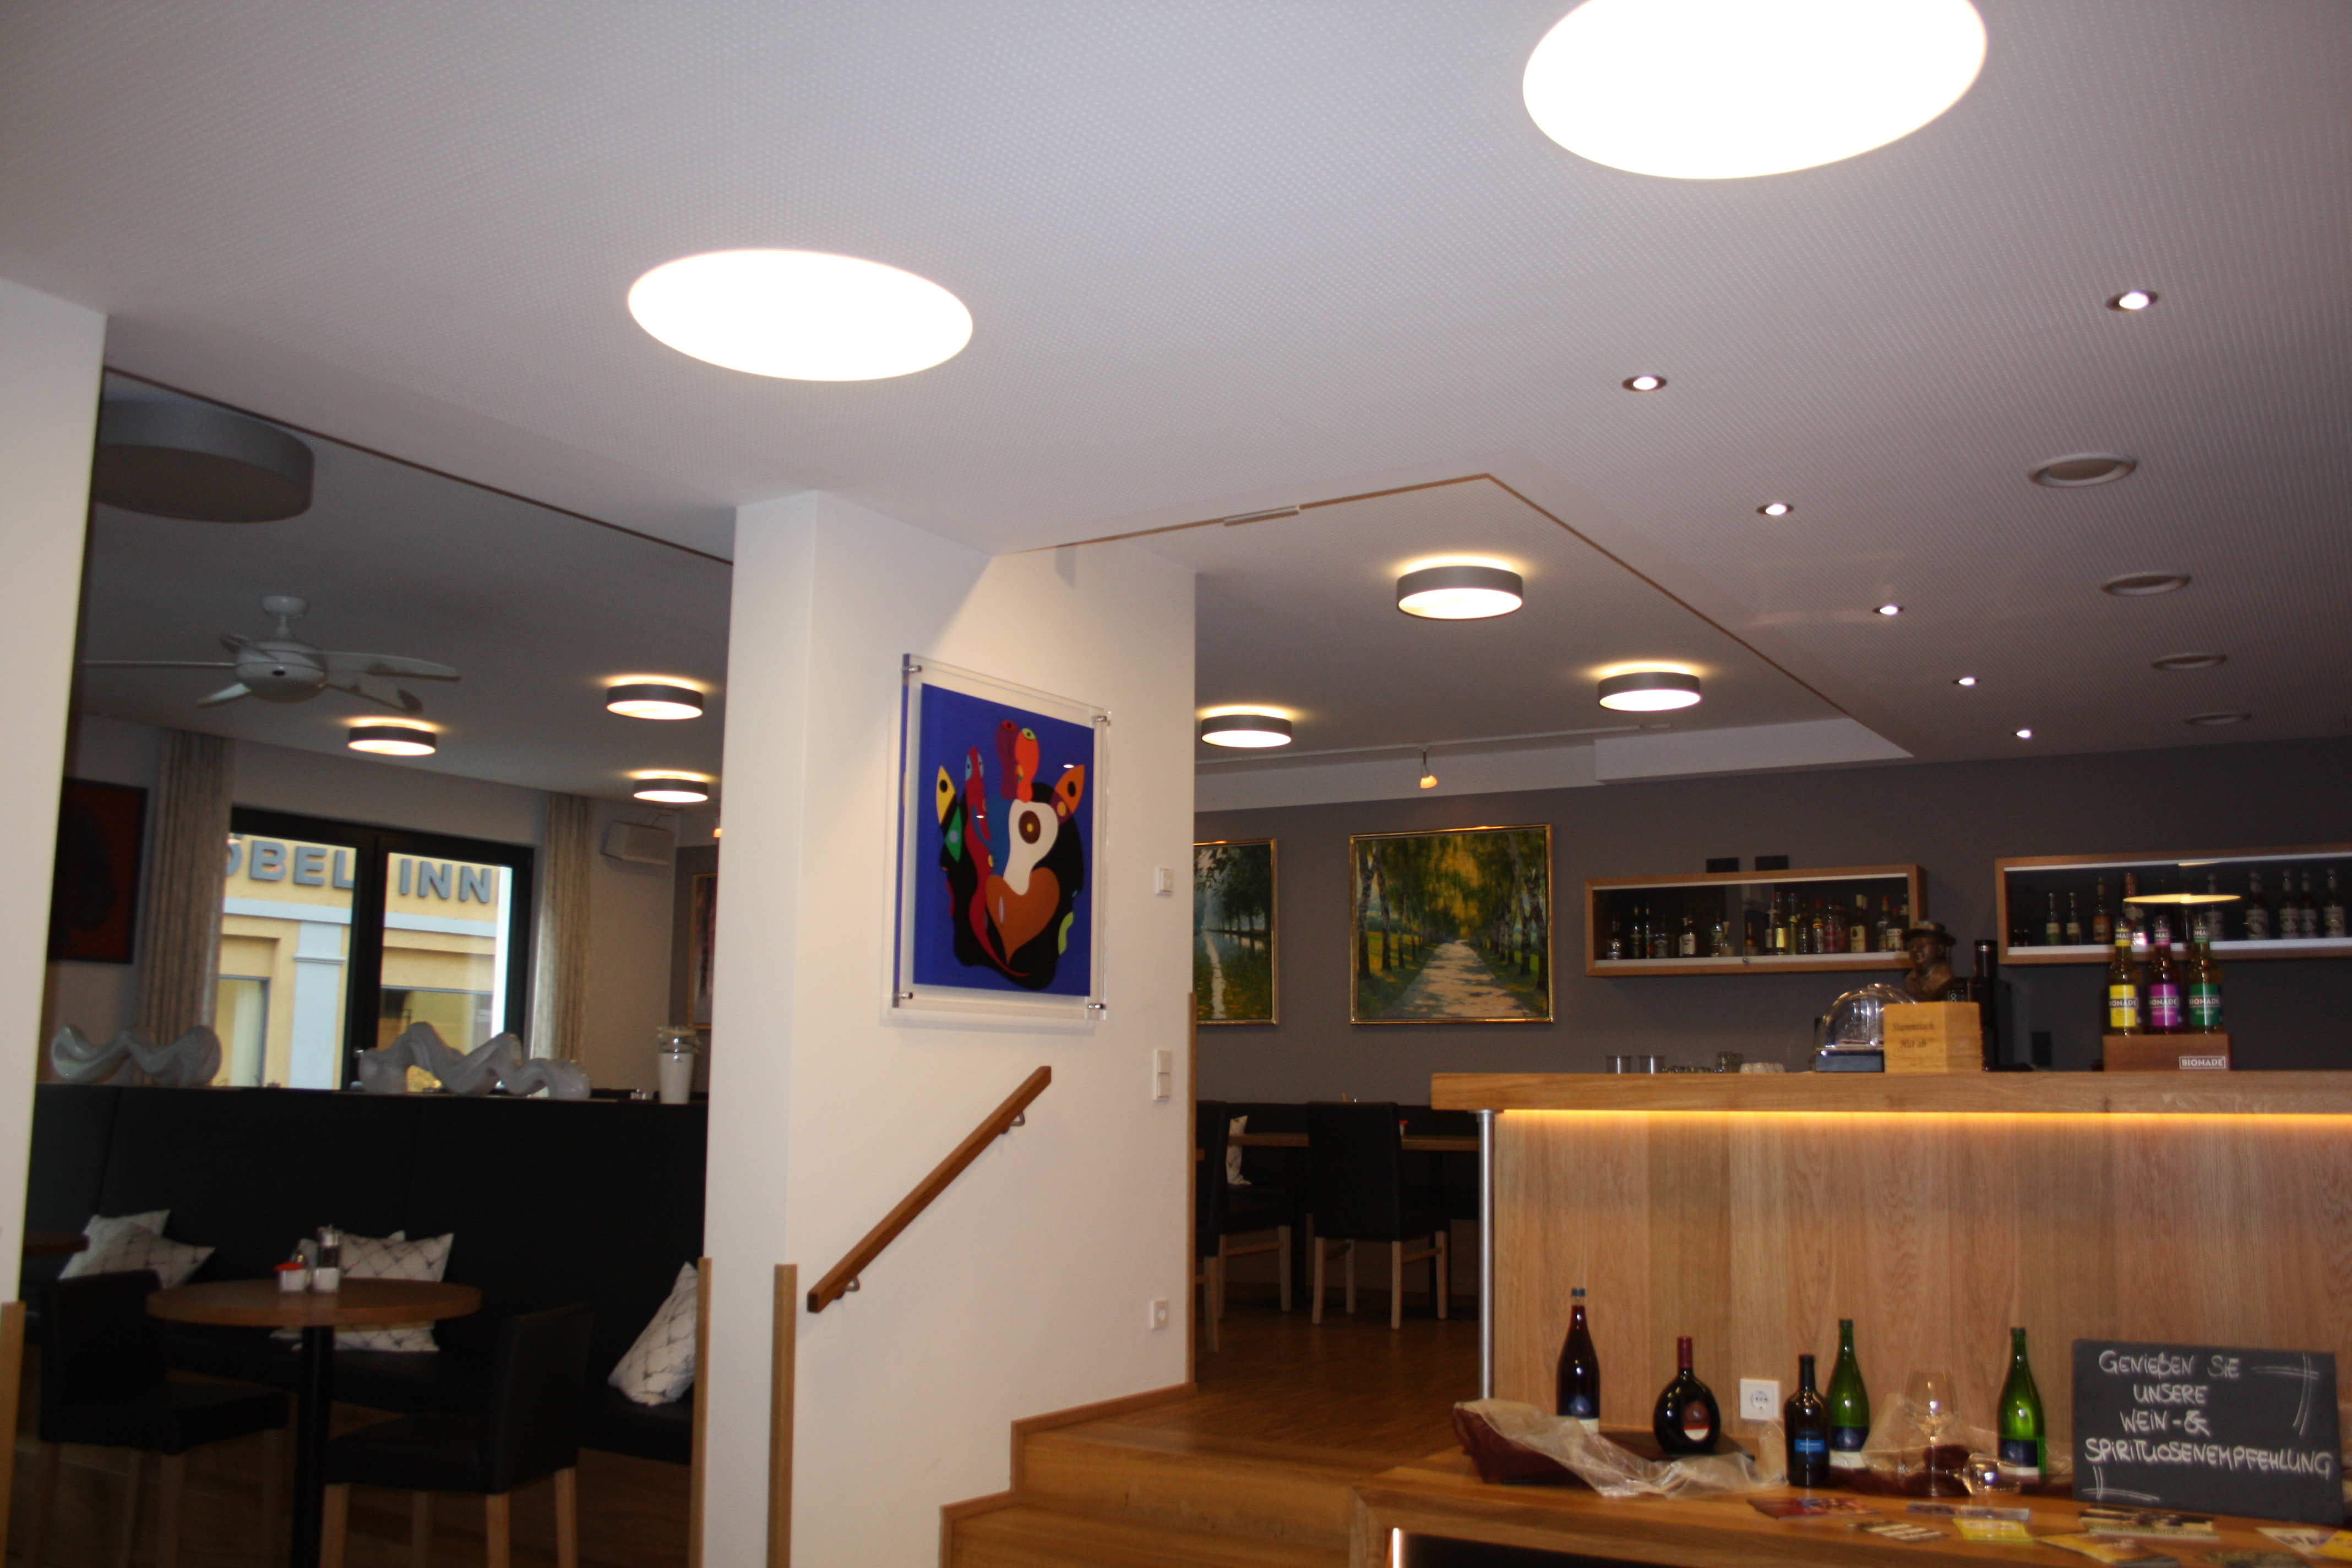 Bar/Lobbybereich vom Stadthotel Reich, Mellrichstadt.
